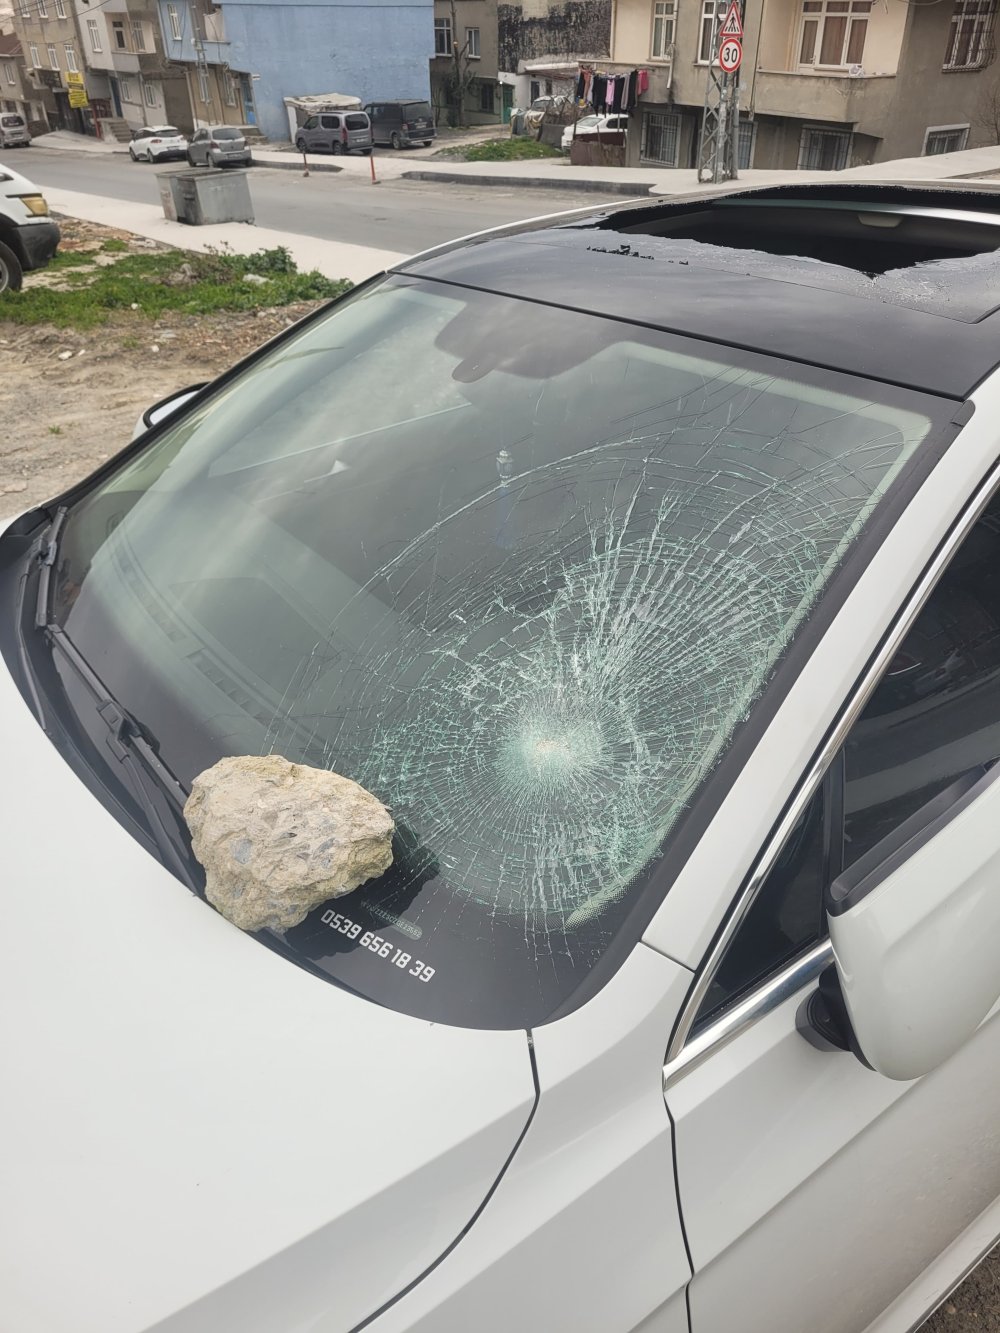 Akraba ziyaretine gelen ailenin aracının camları kırıldı